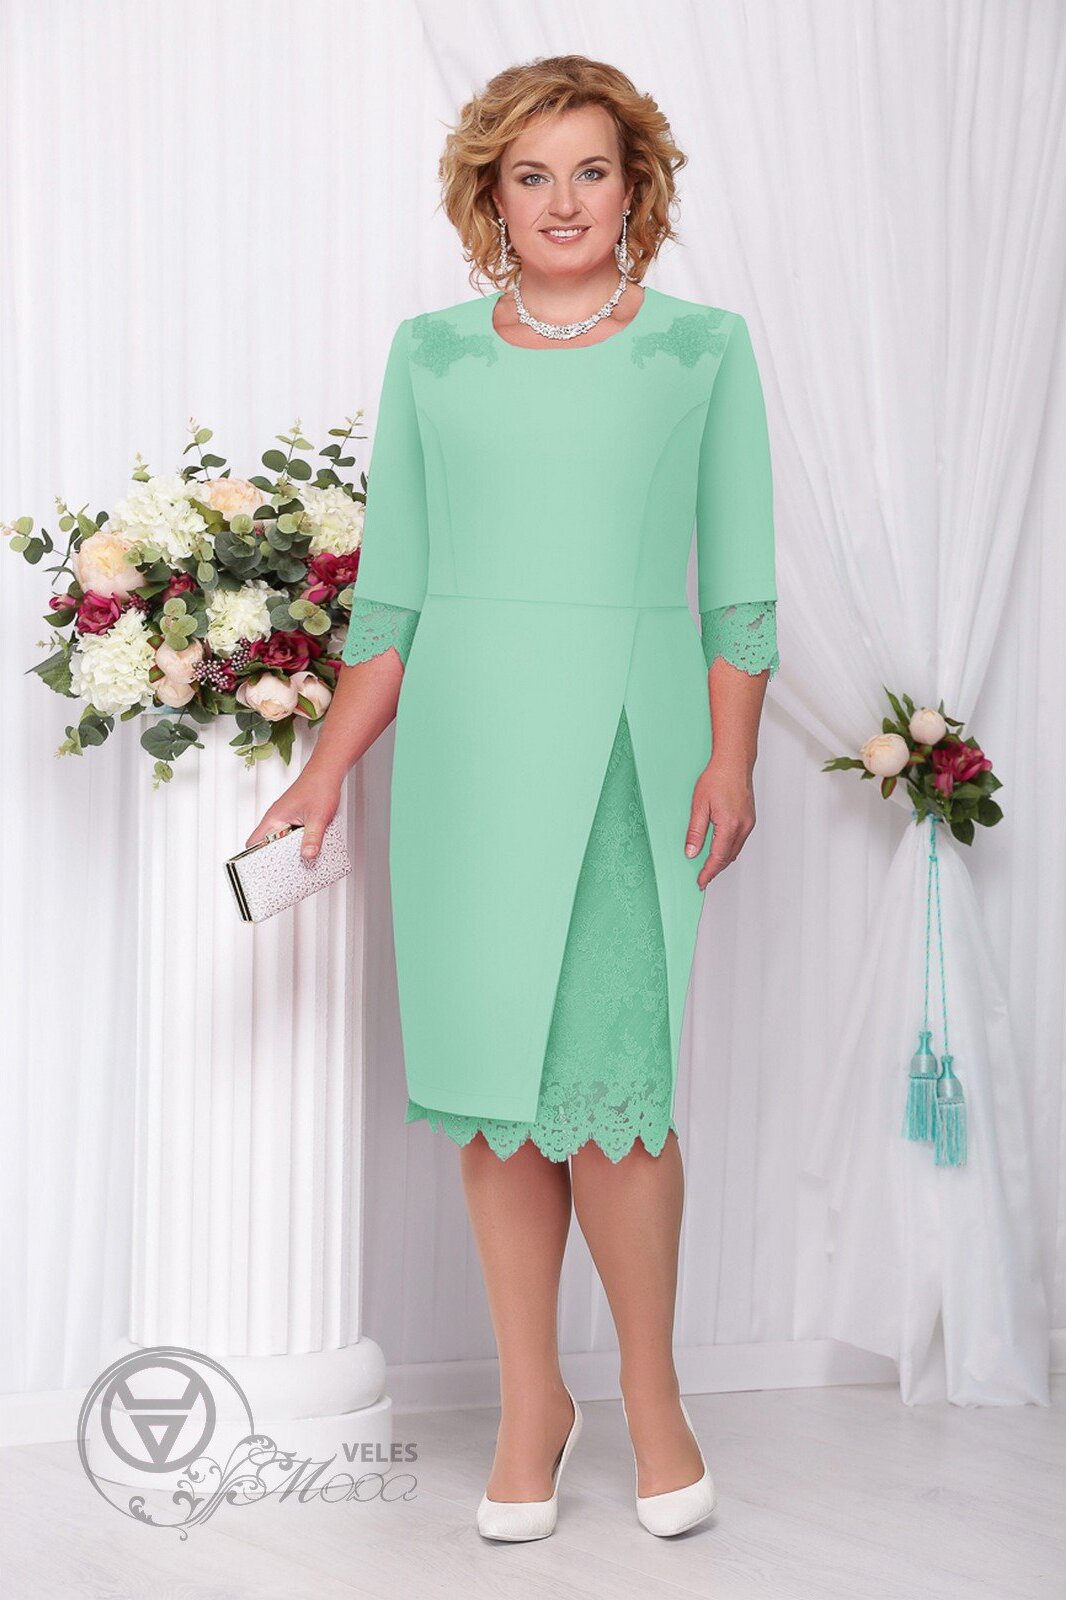 Нарядное платье для женщины. Платье Нинель 261.1. Белорусские платья. Ninele 781406. Платья Белорусские Нинель вечерние размер 56-58. Платье Нинель зеленый цвет 58-60 размера.